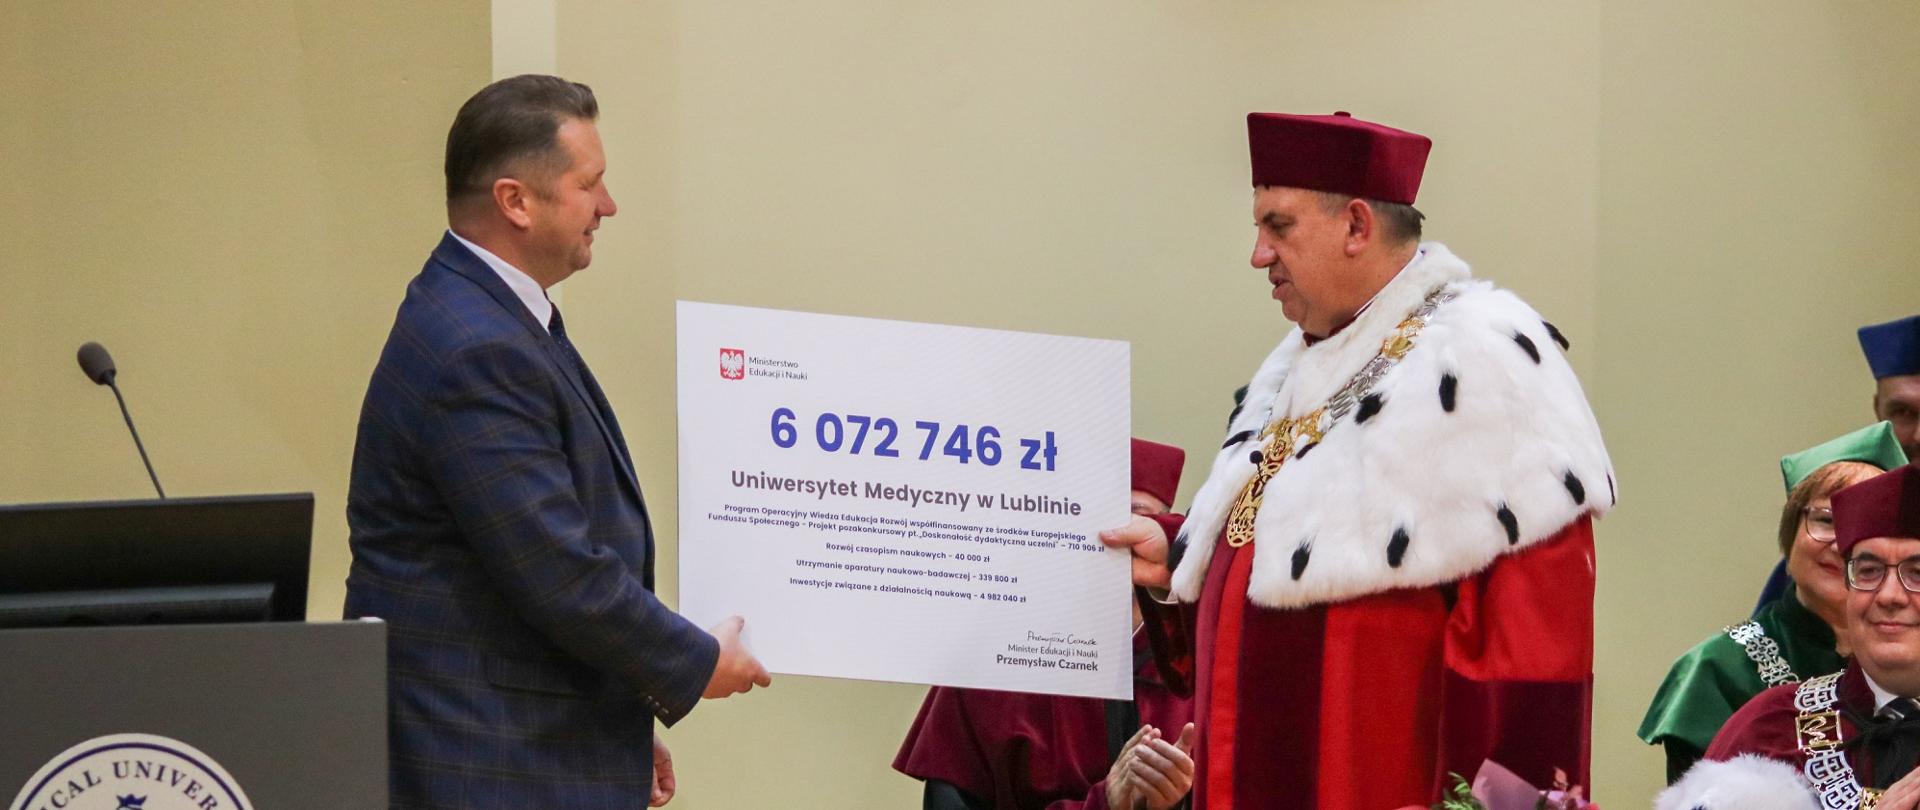 Minister Czarnek podaje mężczyźnie w ceremonialnym czerwonym stroju z gronostajowym kołnierzem wielki symboliczny czek z napisem 6 072 746 zł.